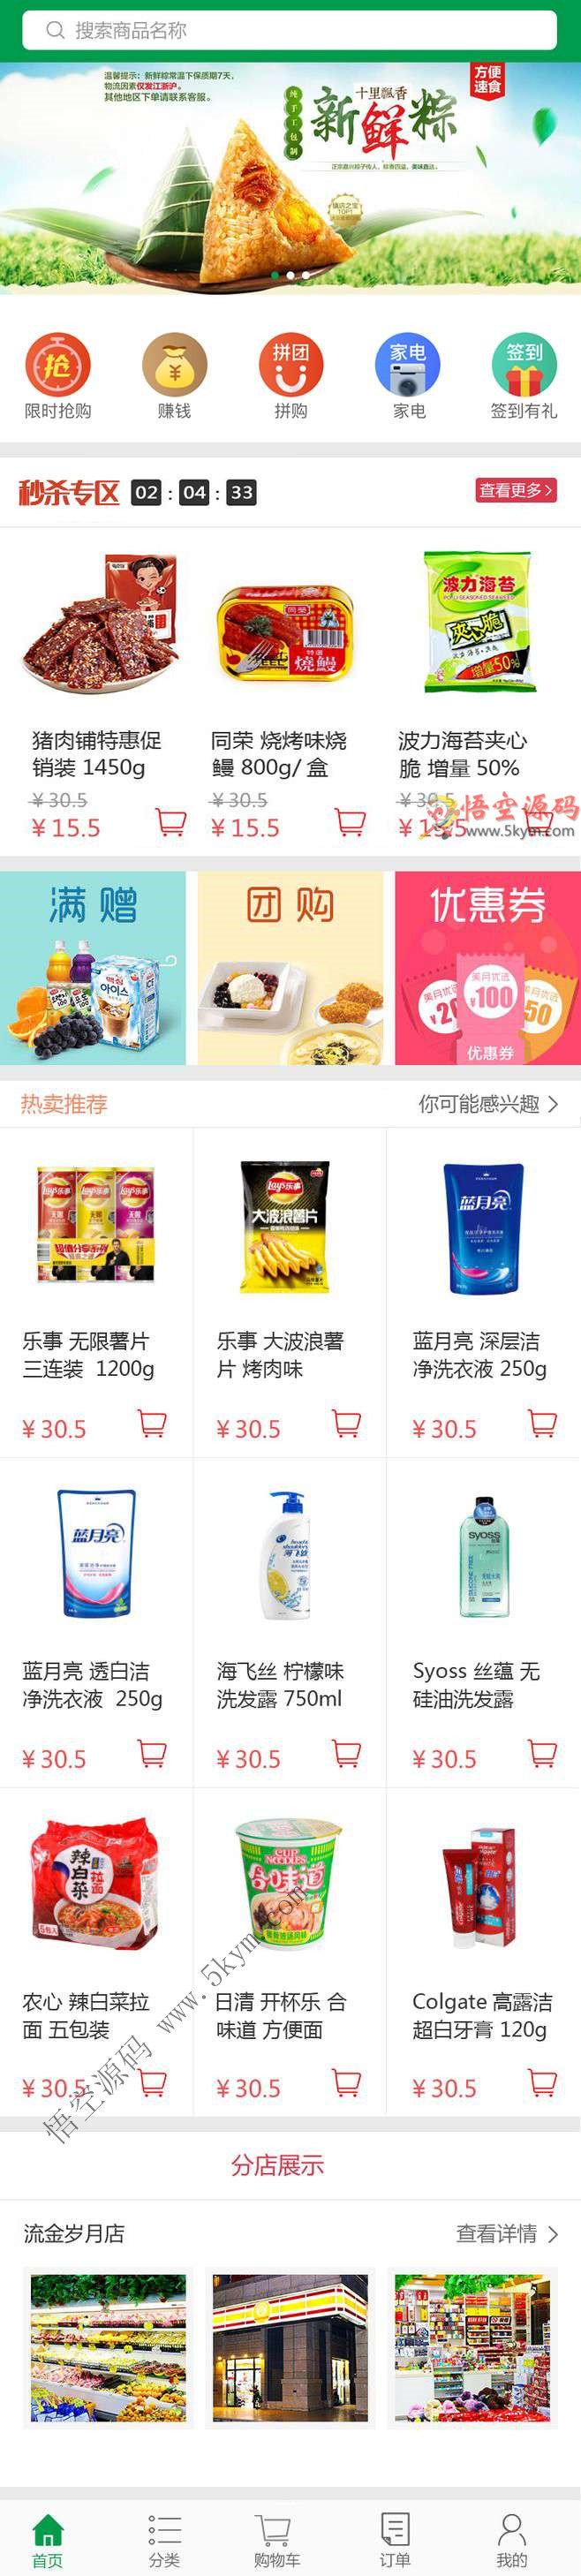 乐鑫购物商城手机app首页模板 抢购、赚钱、拼团 html5网站源码下载